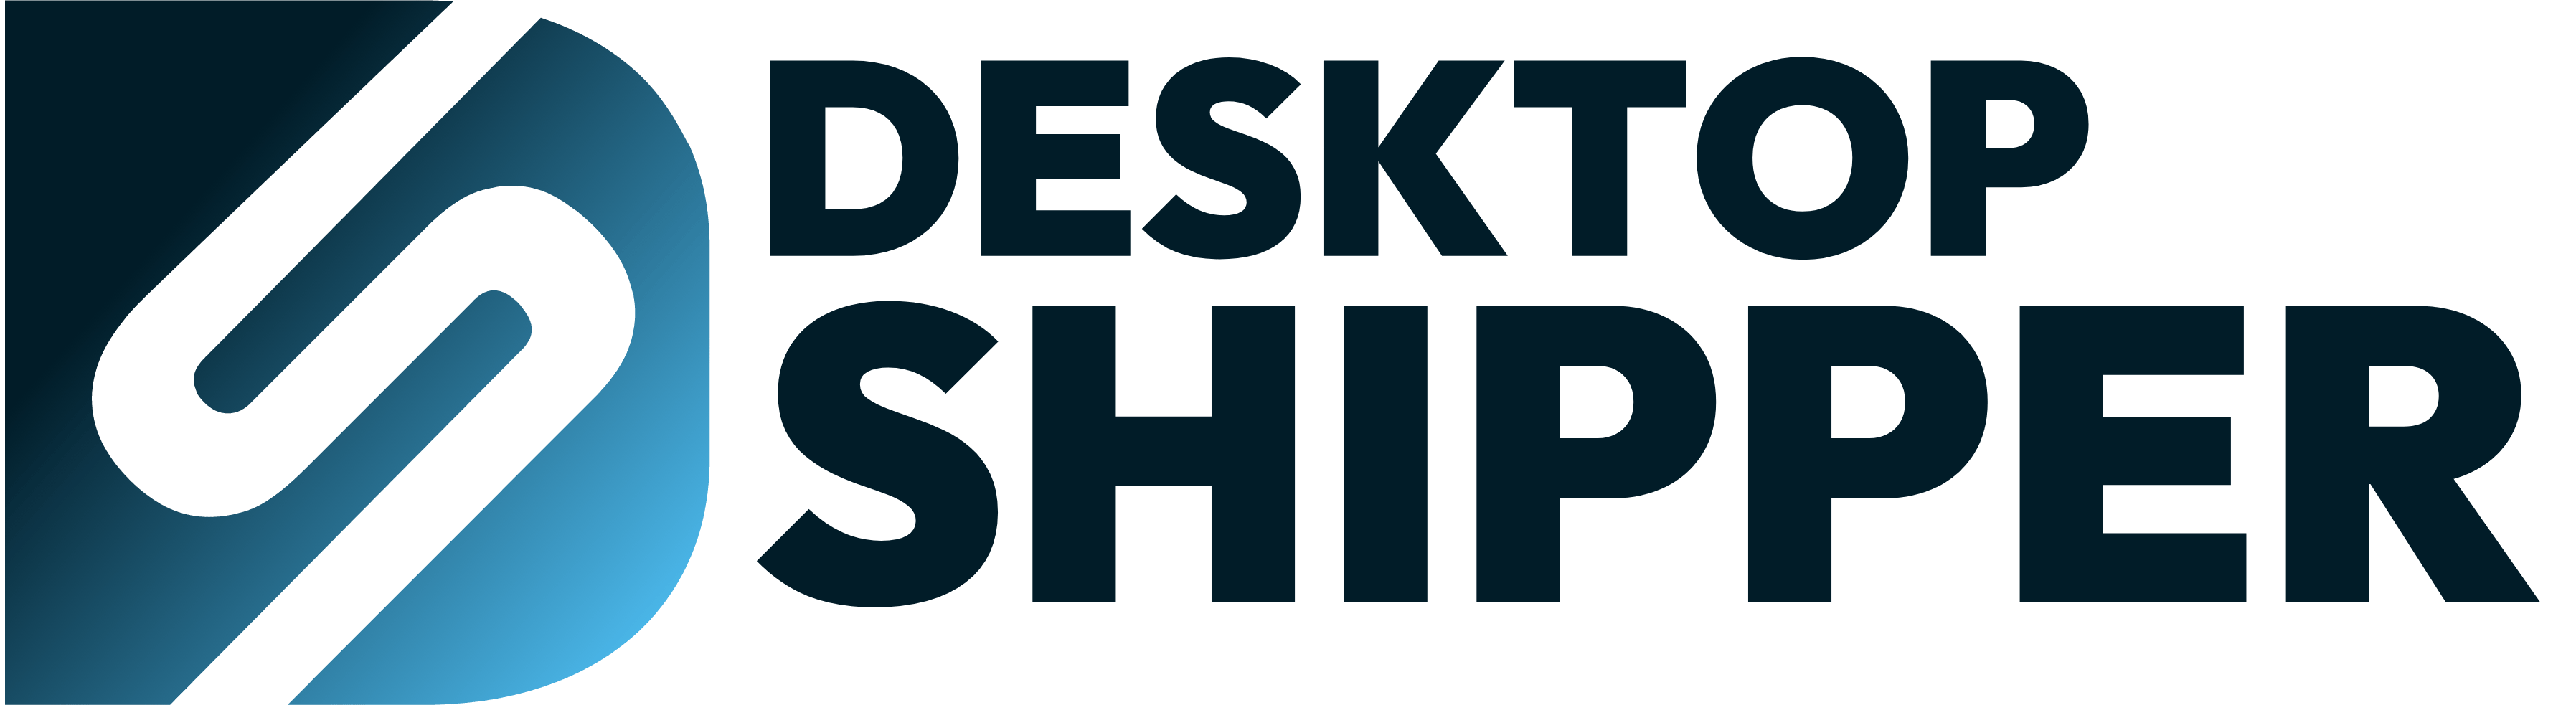 DesktopShipper logo.